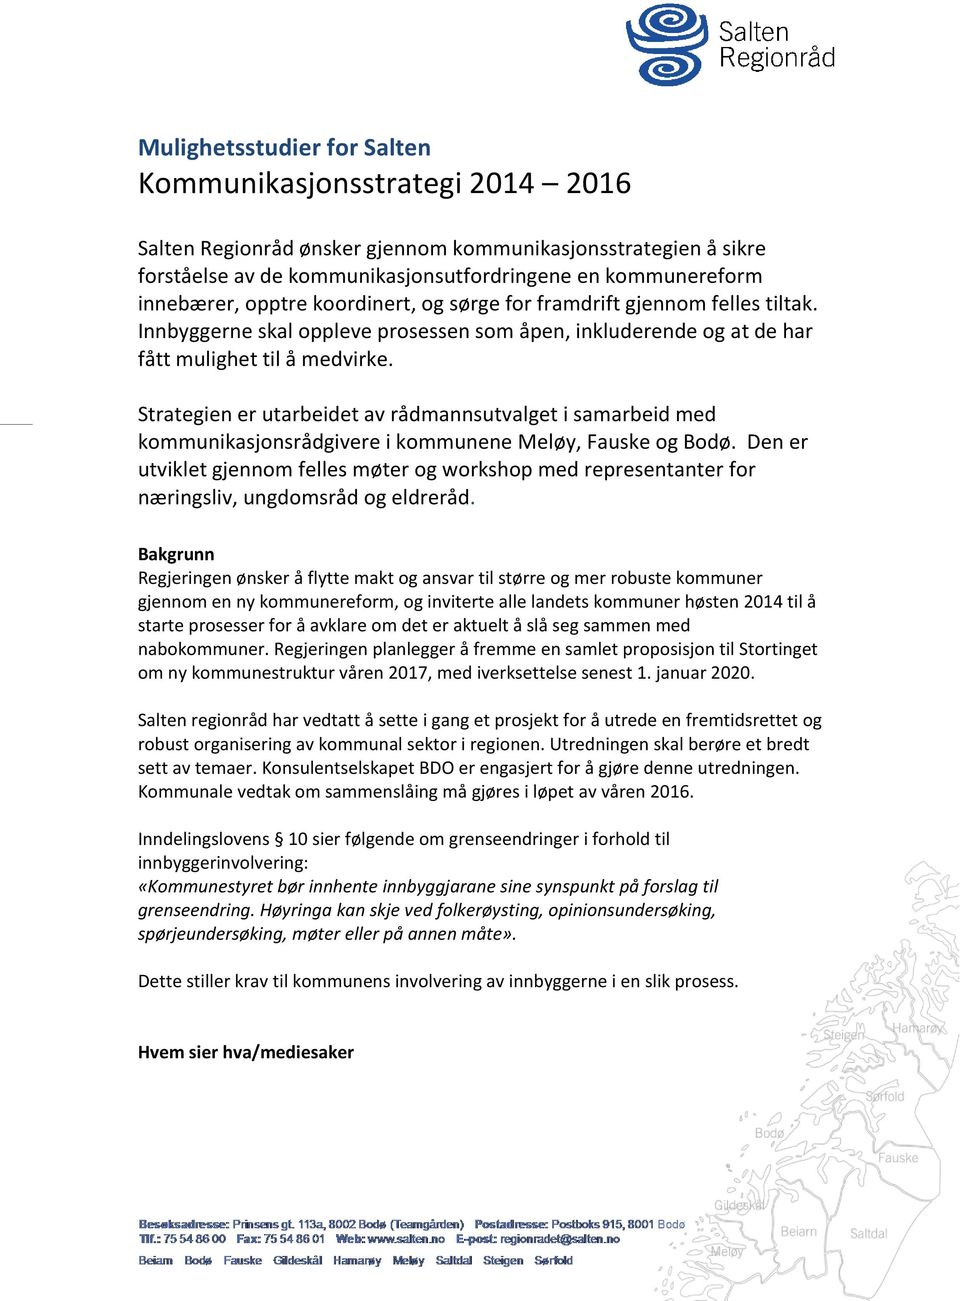 Strategien er utarbeidet av rådmannsutvalget i samarbeid med kommunikasjonsrådgivere i kommunene Meløy, Fauske og Bodø.